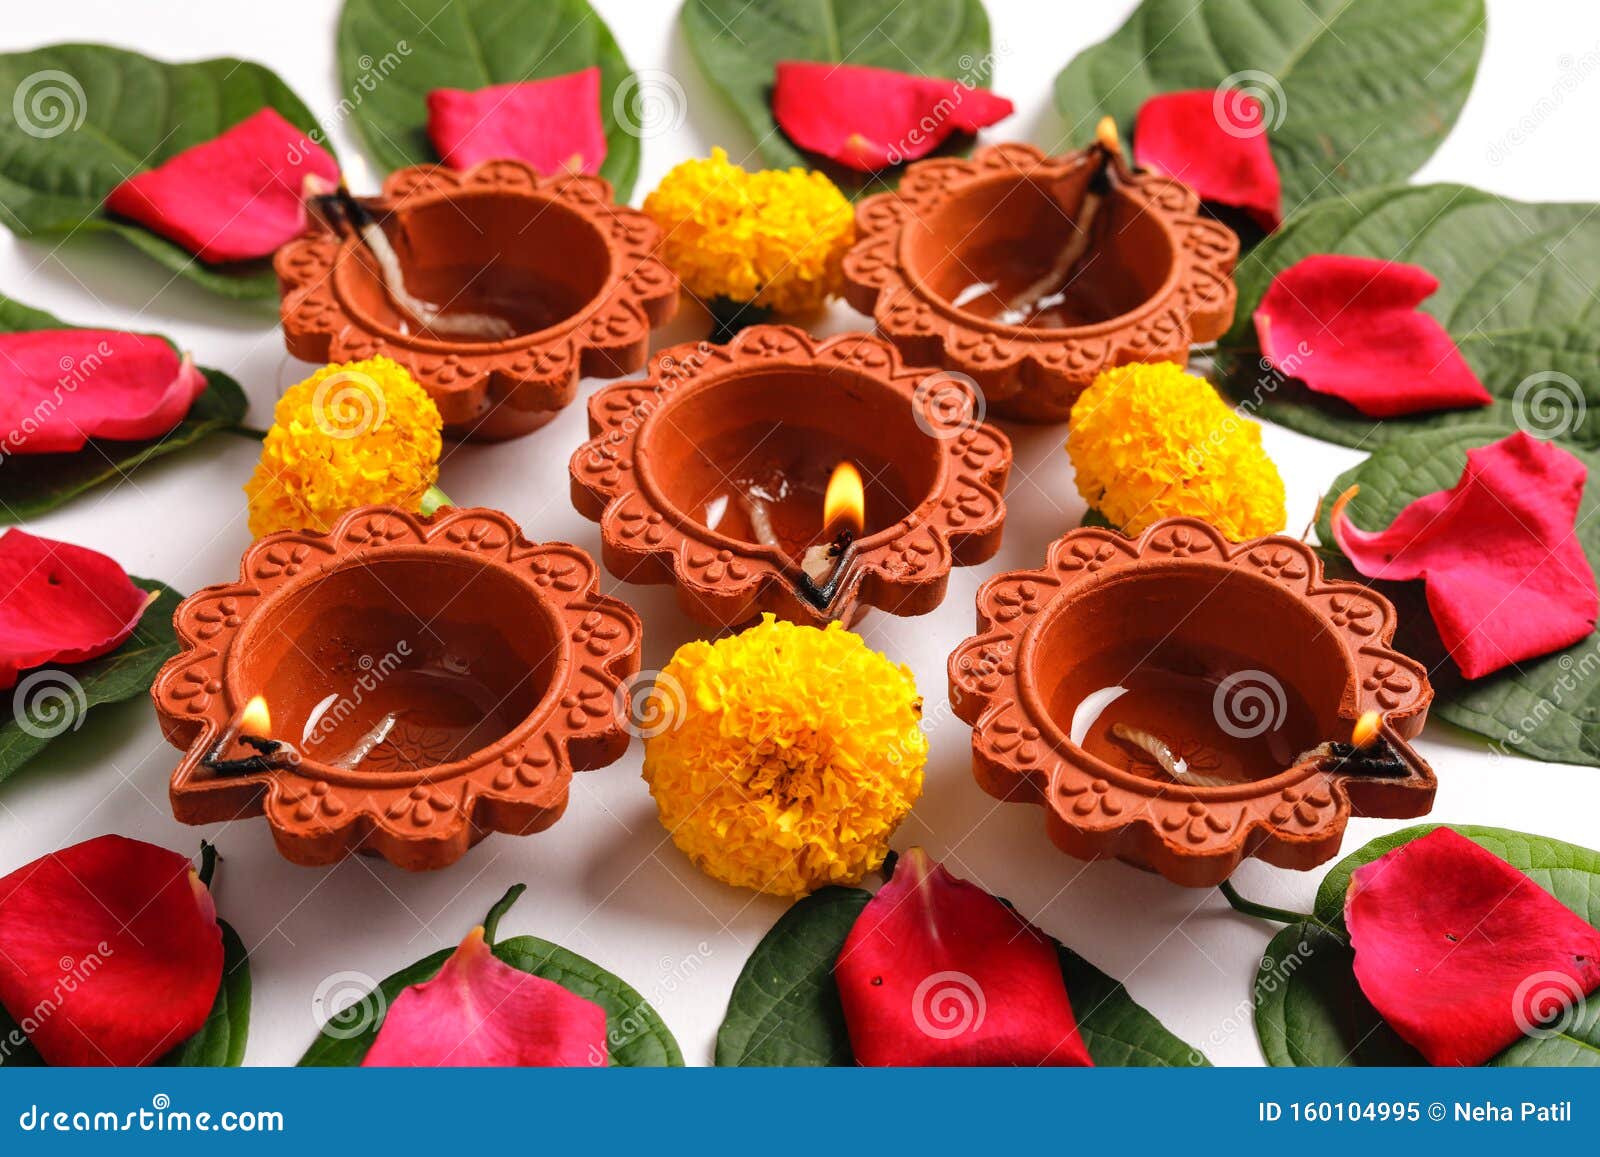 Marigold Flower Rangoli Design For Diwali Festival ...